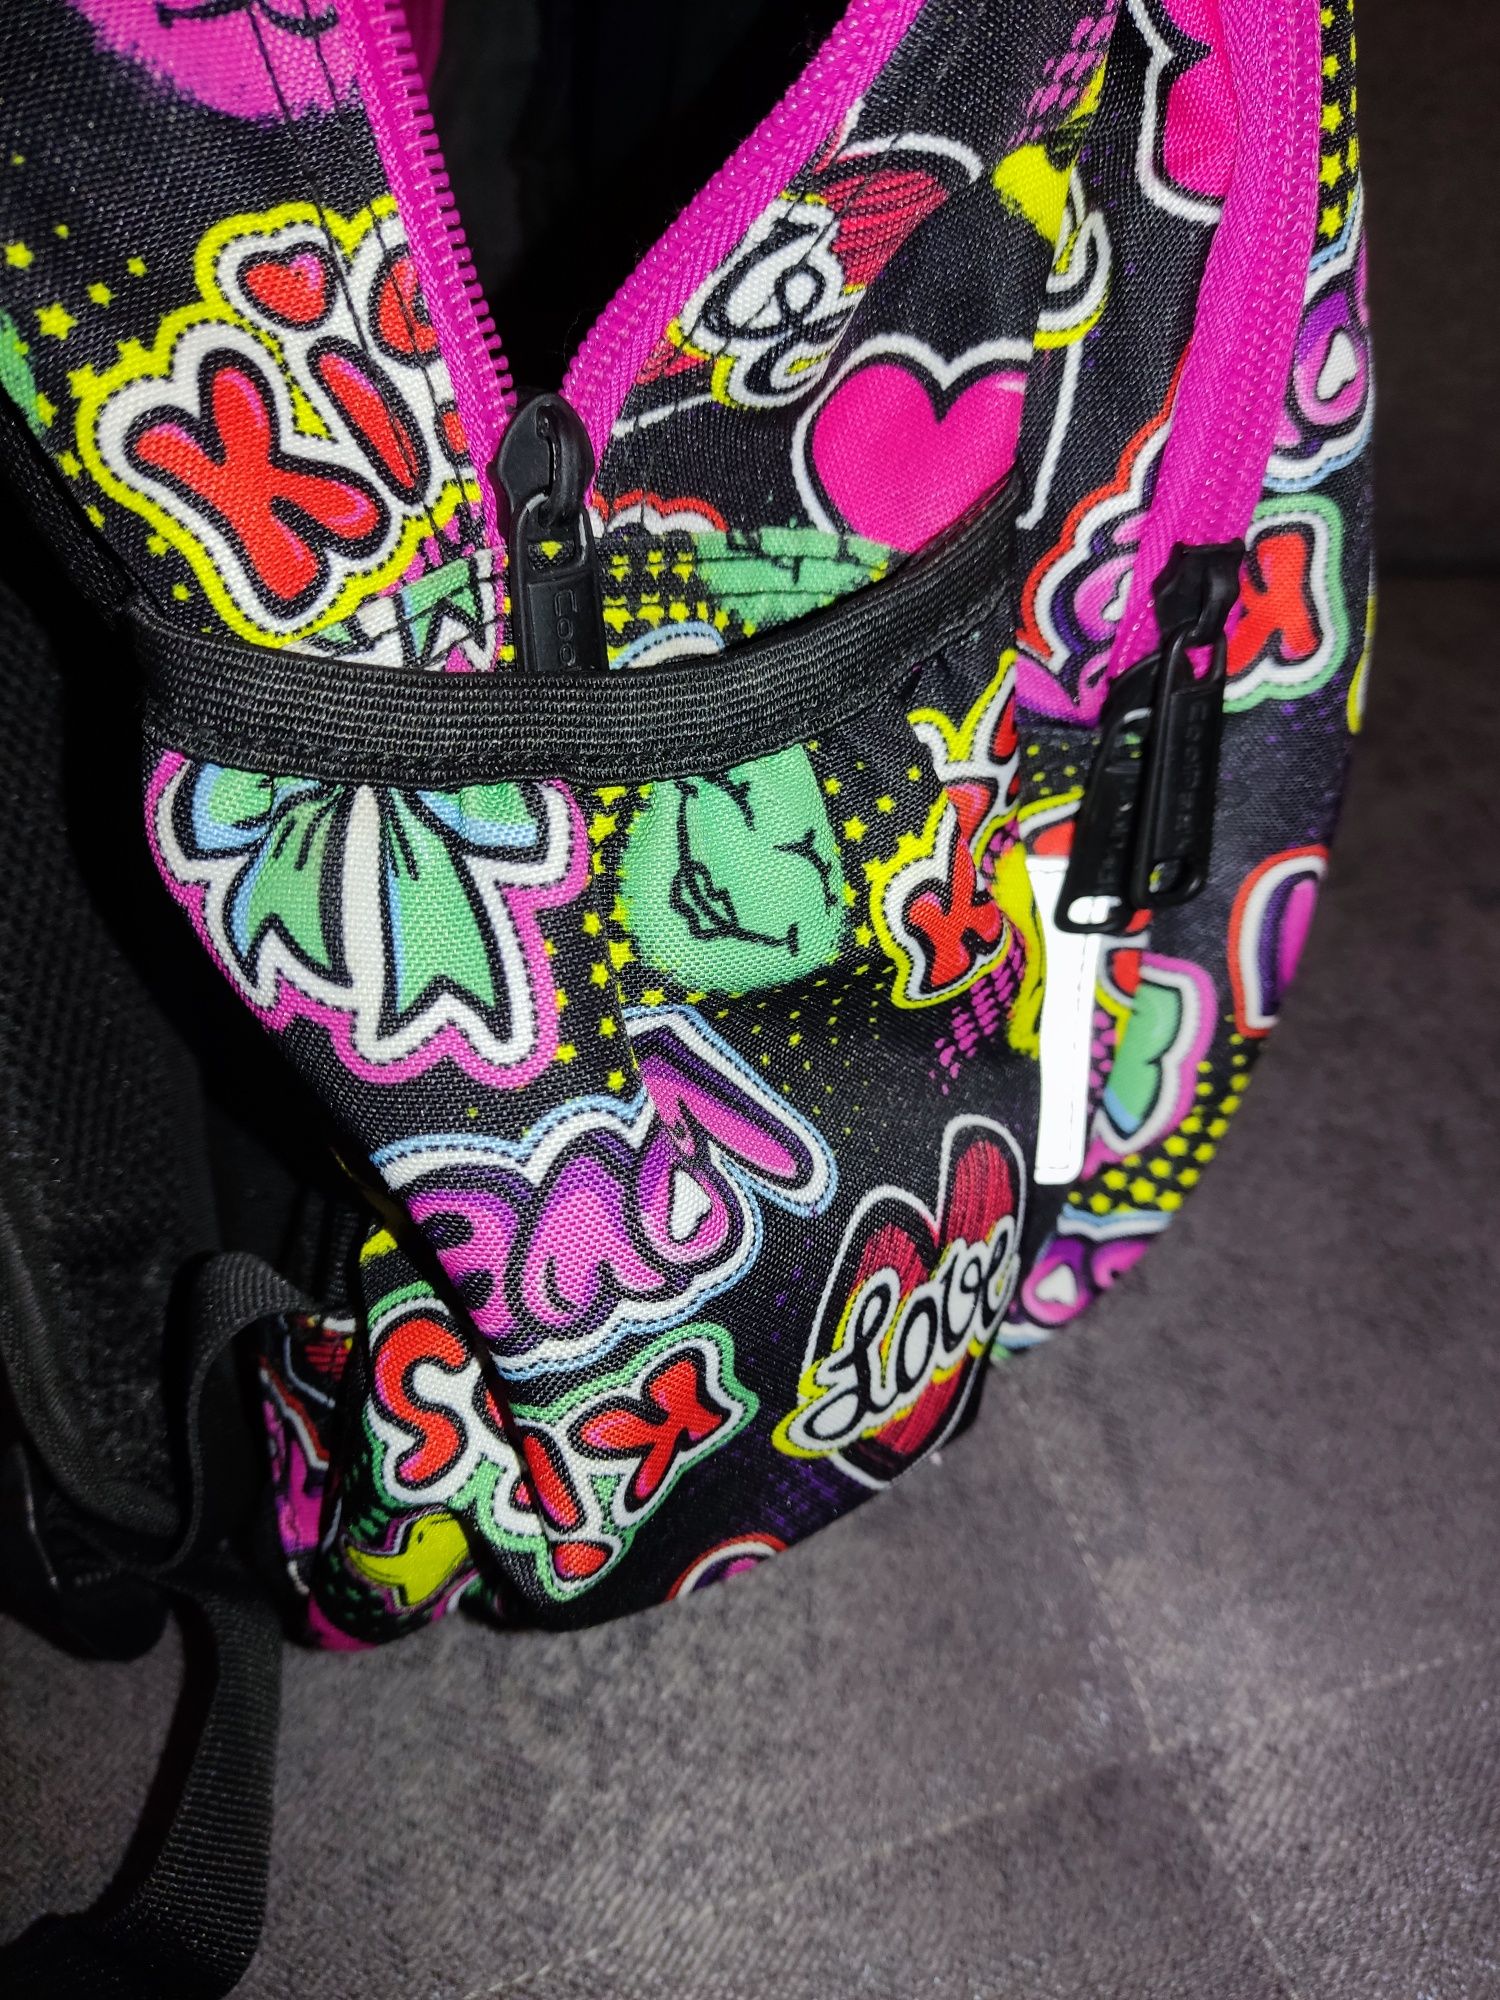 Tornister plecak szkolny CoolPack dla dziewczynki.